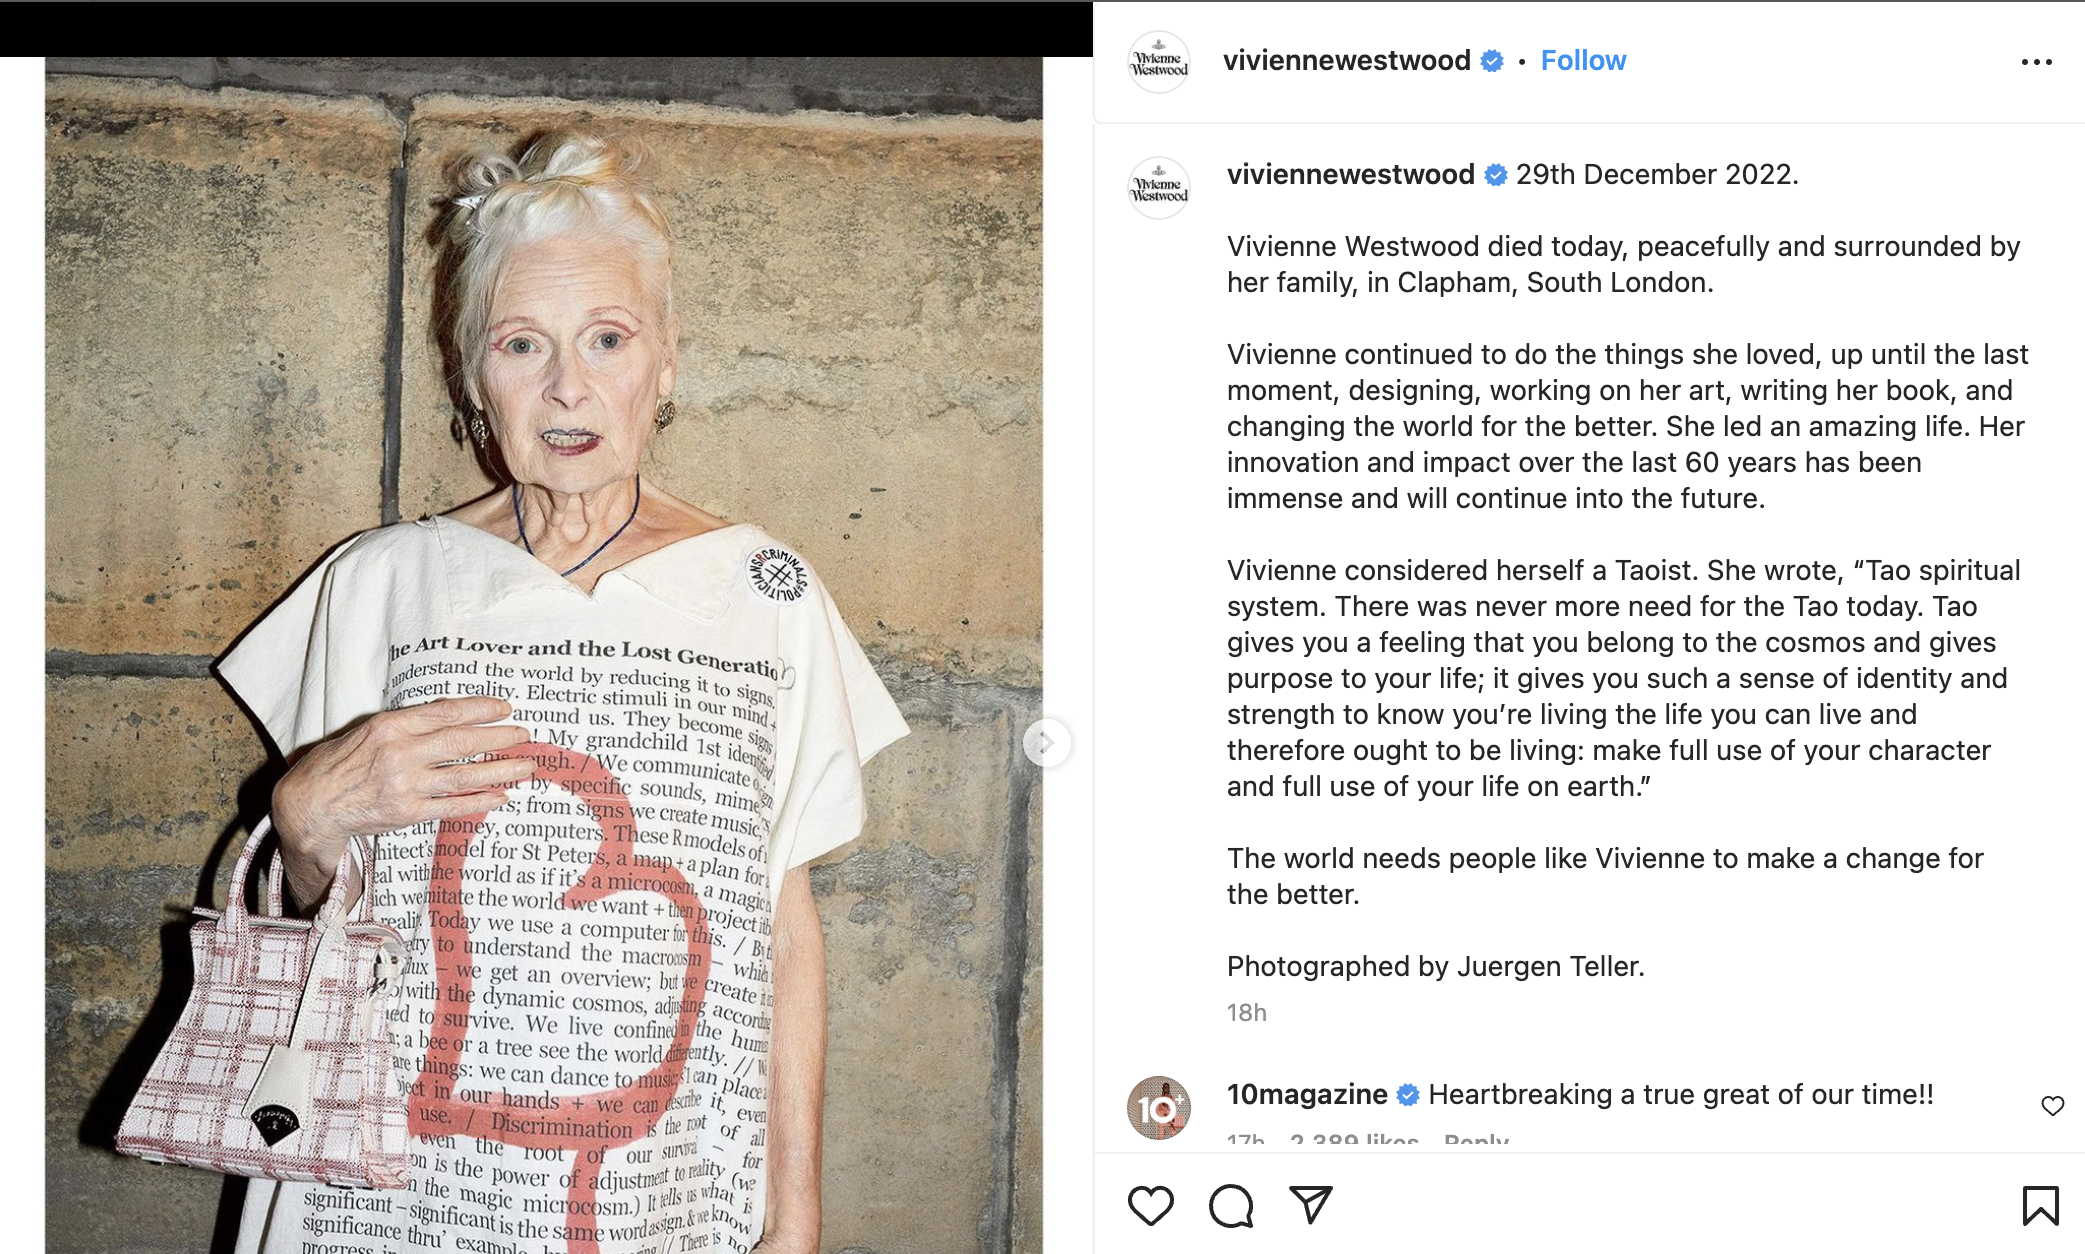 Vivienne Westwood team posts statement